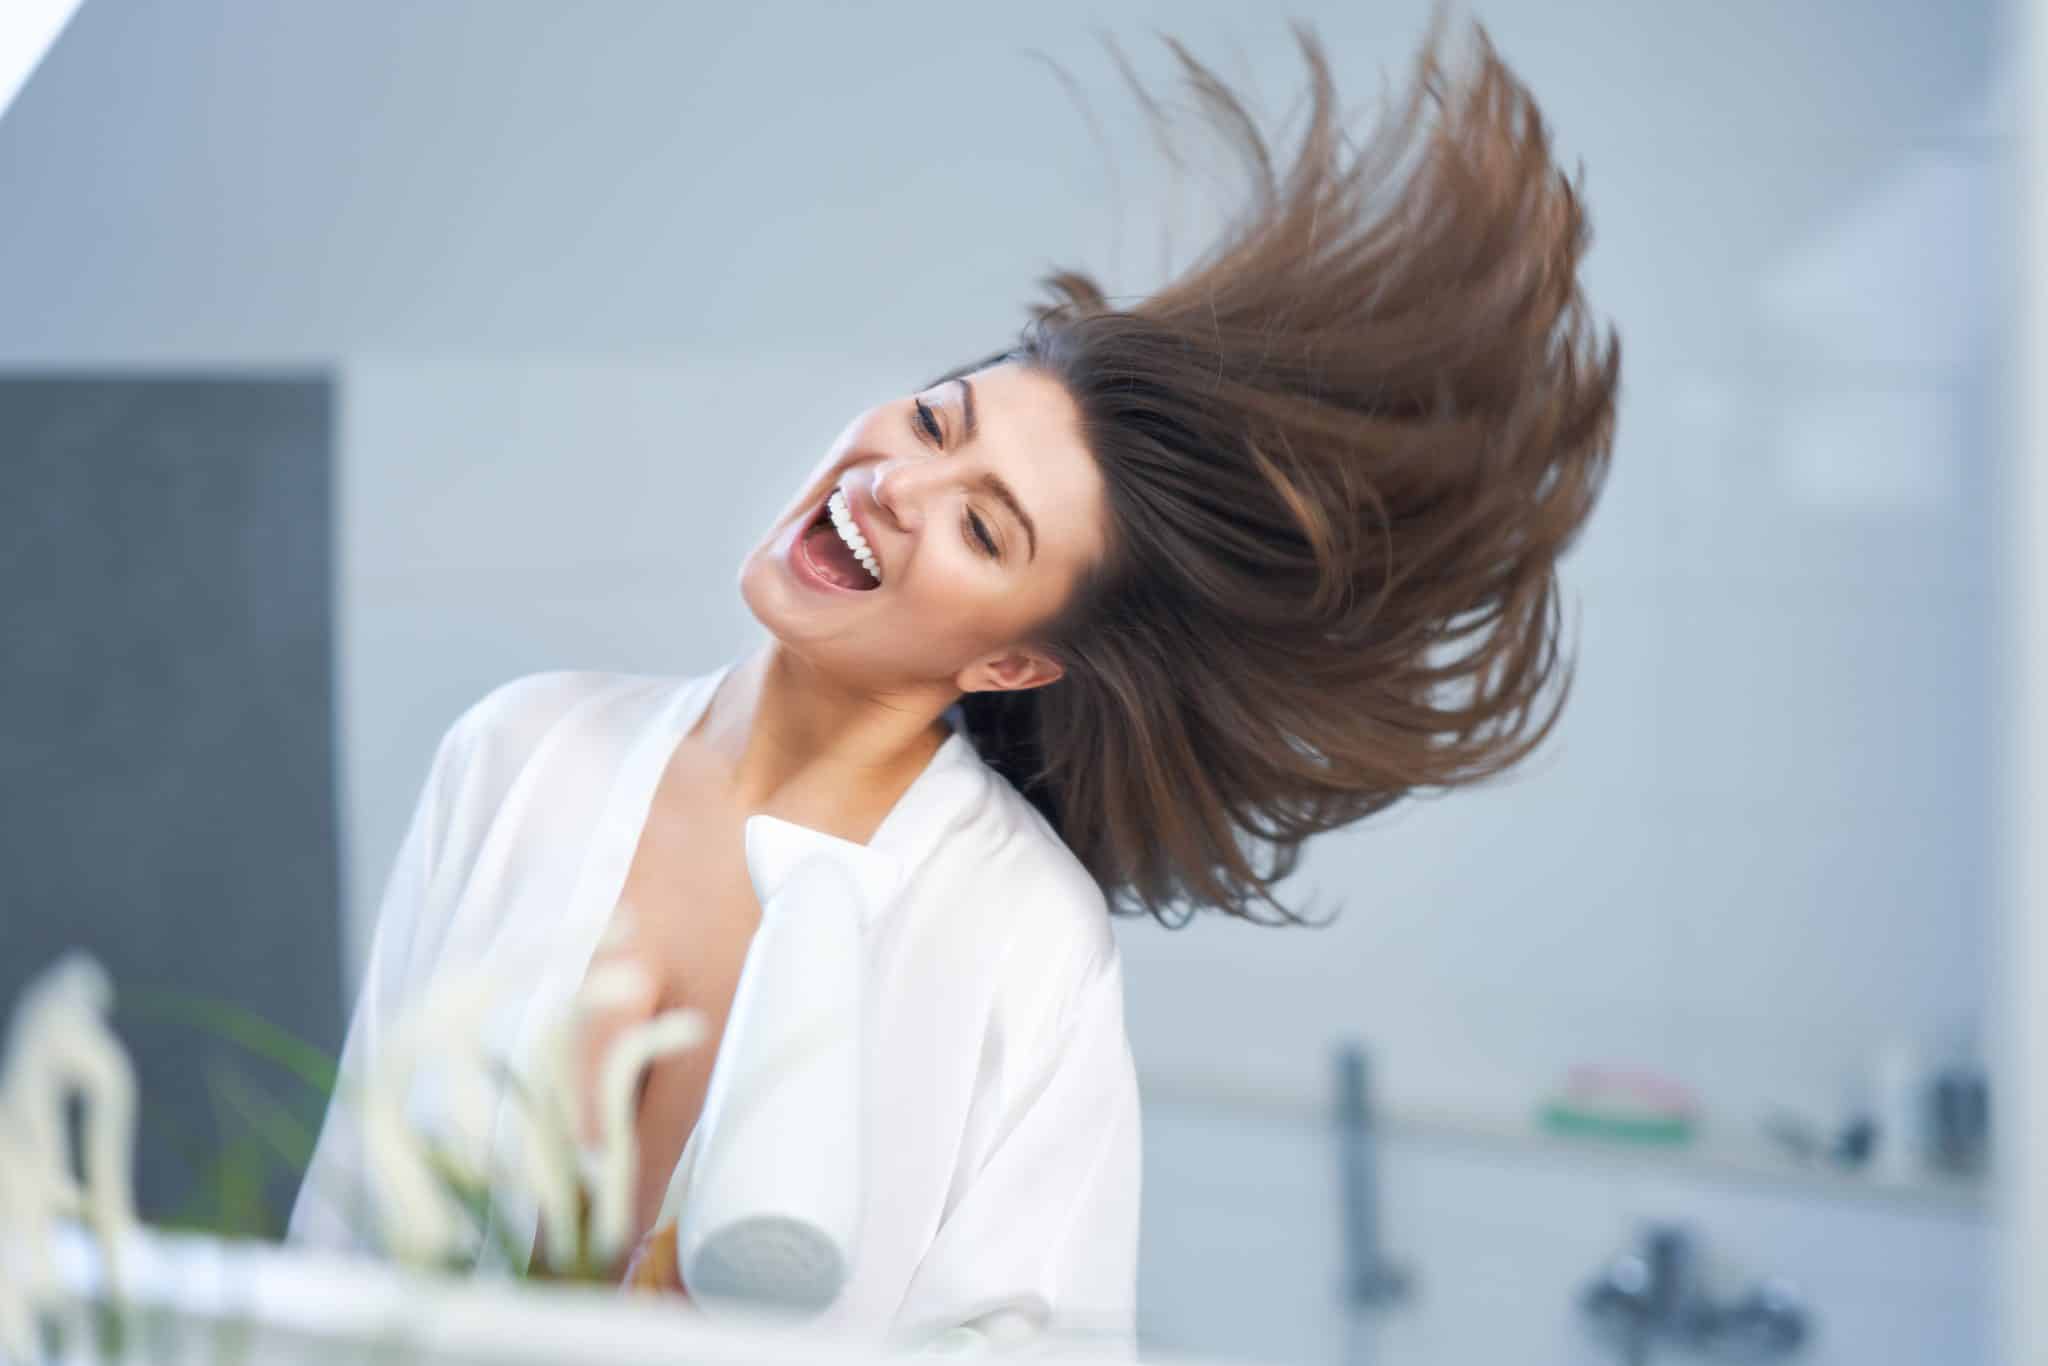 Revalid kapsle recenze: Zachrání vaše padající vlasy?